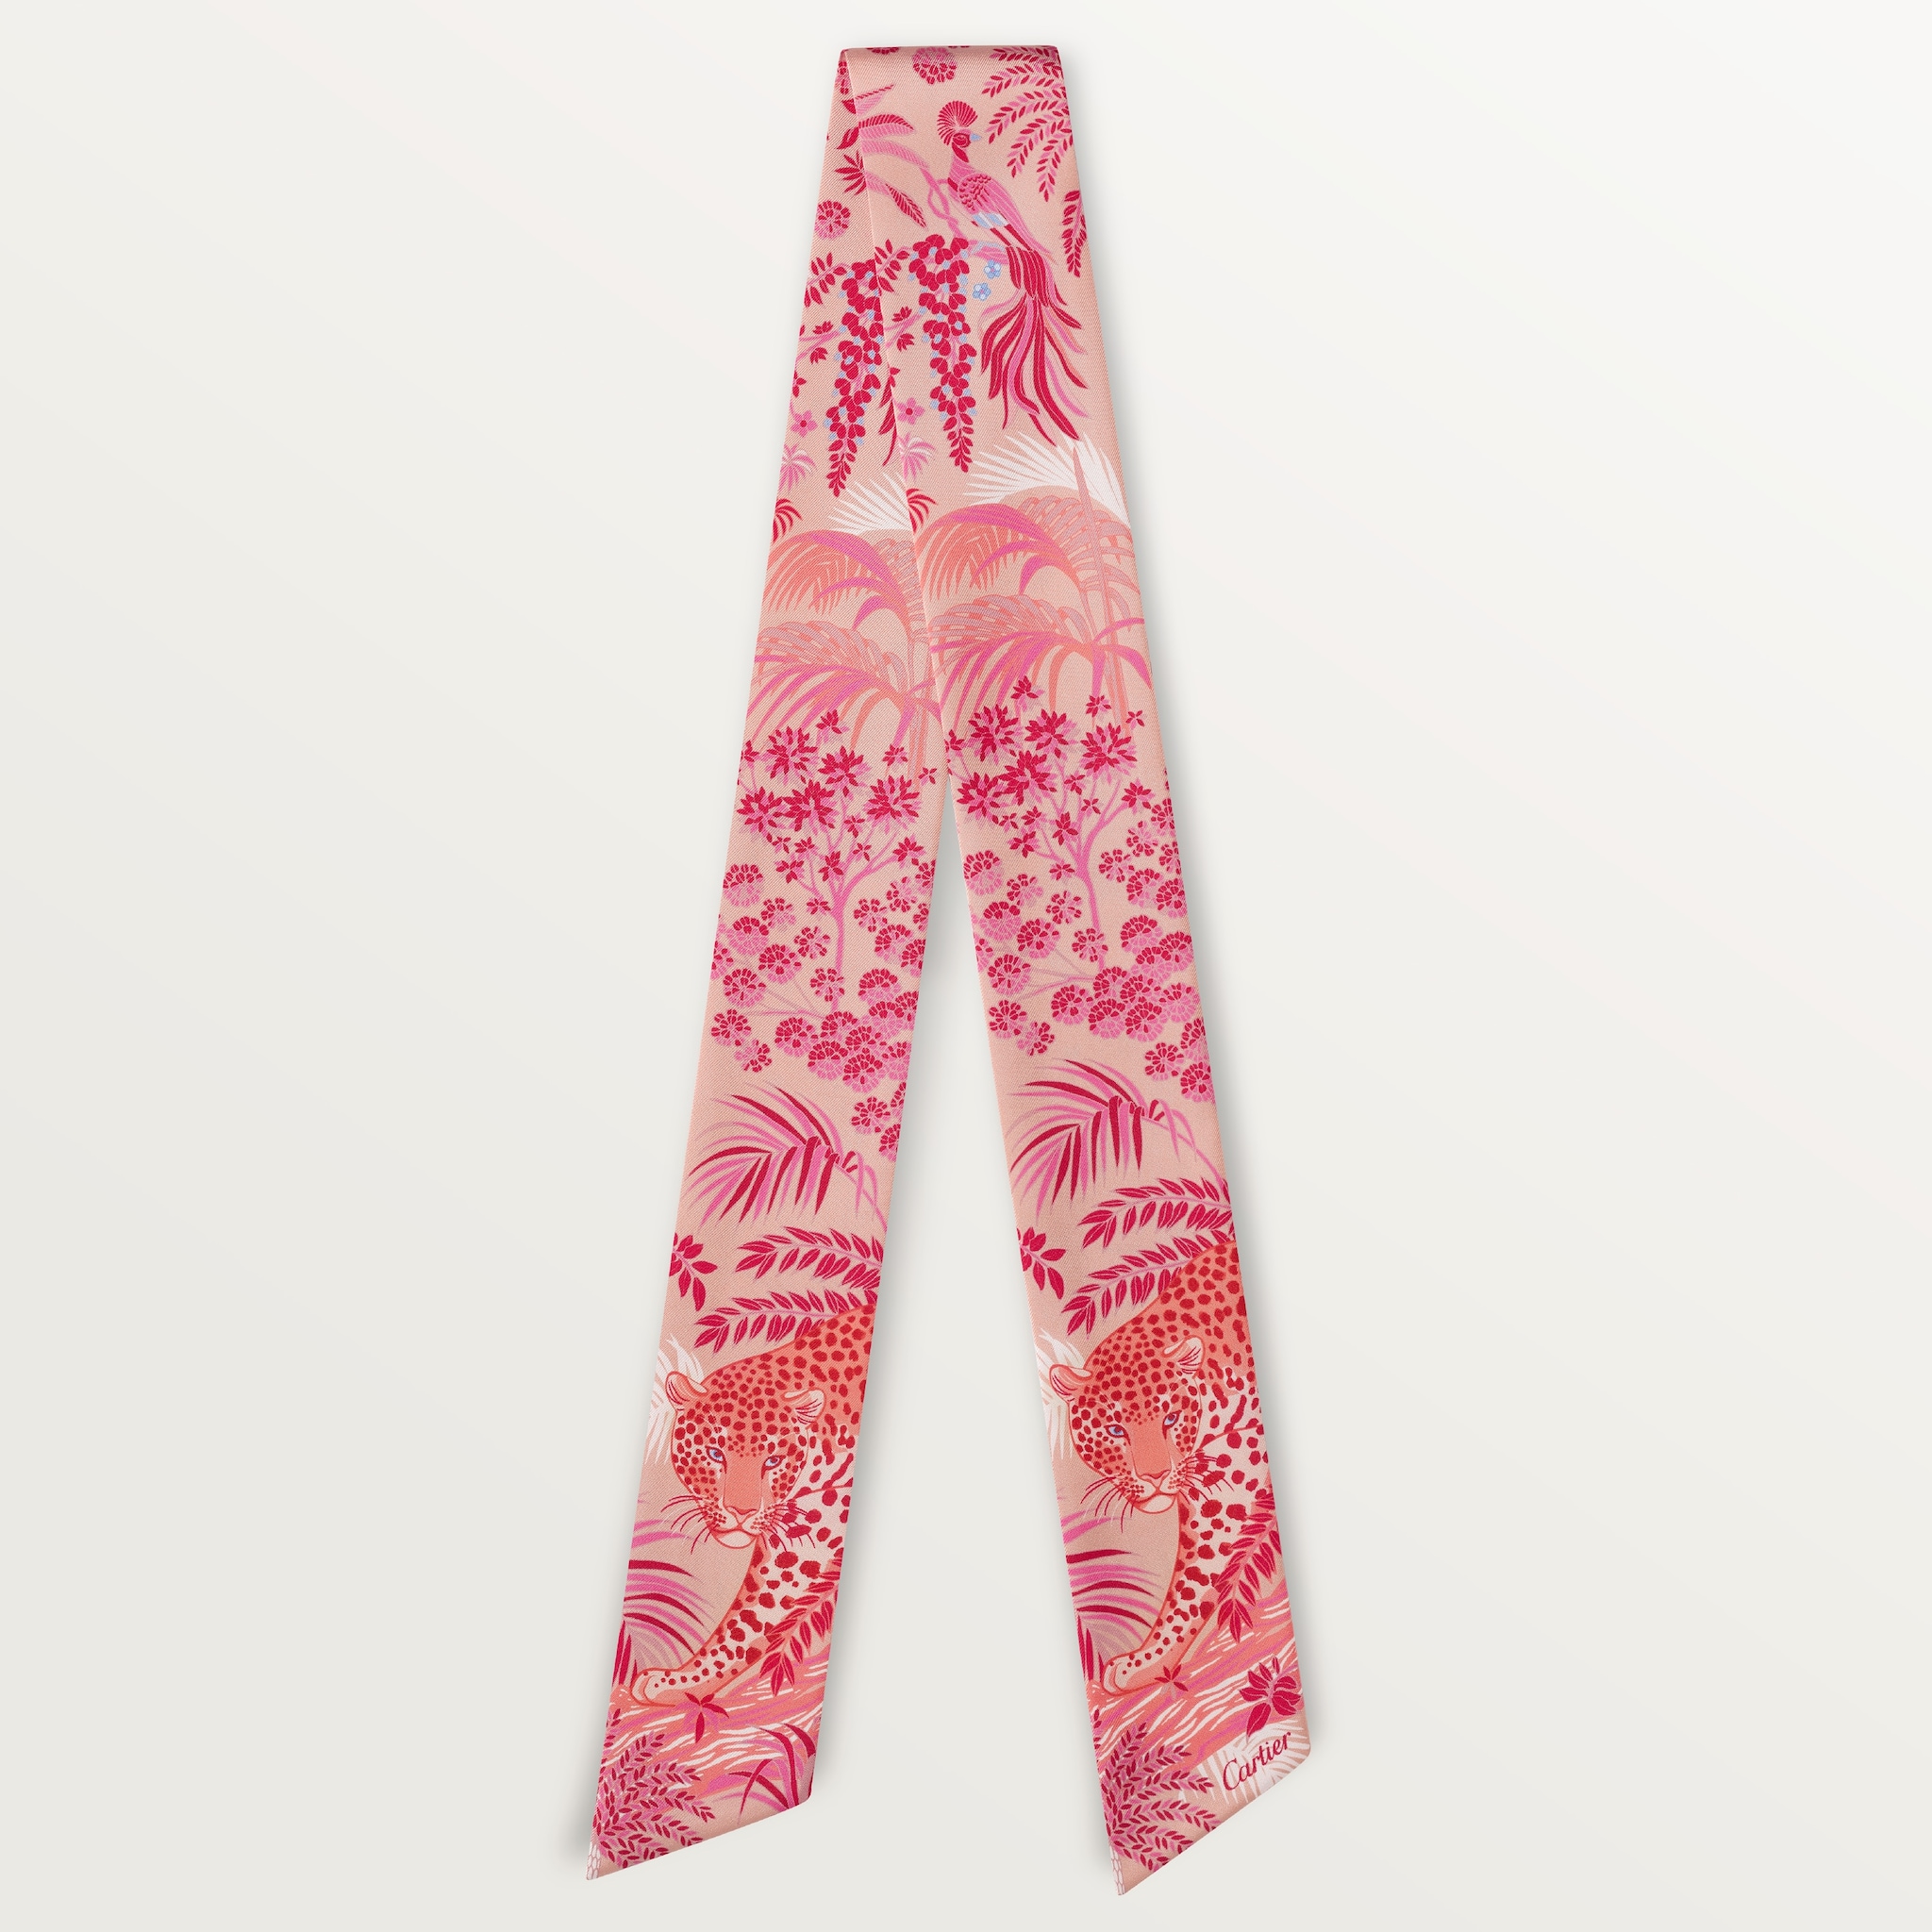 動植物及花卉圖案絲巾淺粉紅色斜紋真絲